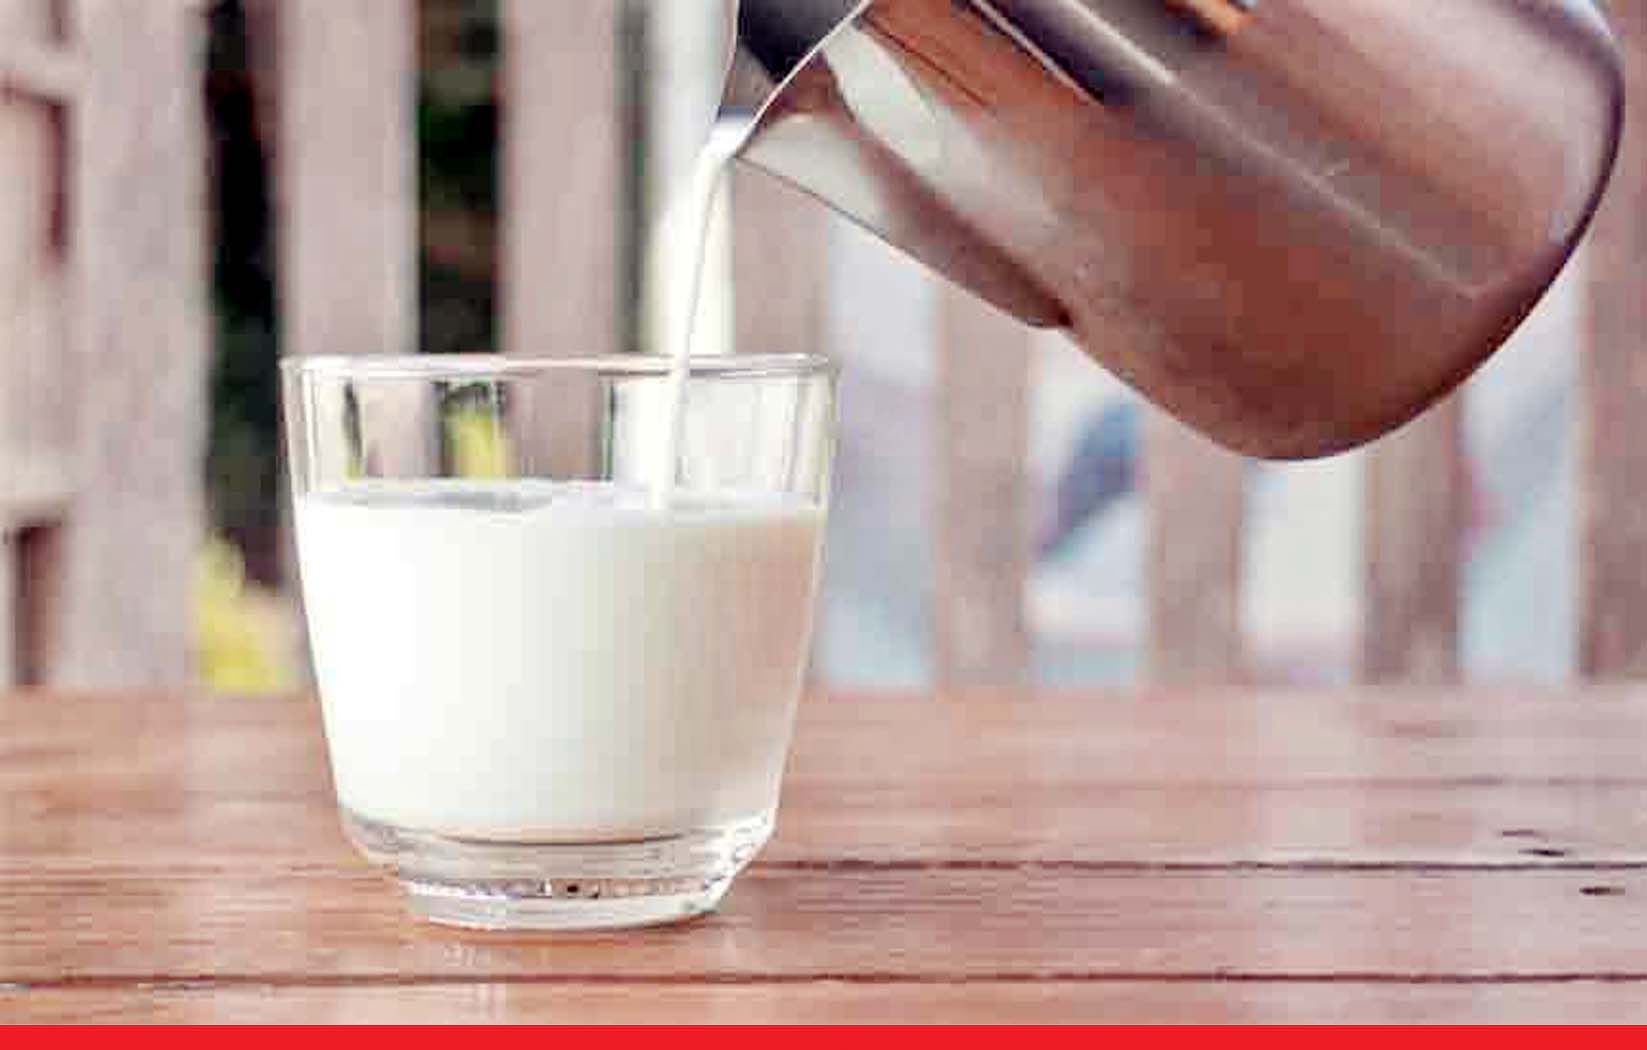 मुंबई में आज से 5 रुपये महंगा हुआ दूध, अब 1 लीटर के देने होंगे 85 रुपये